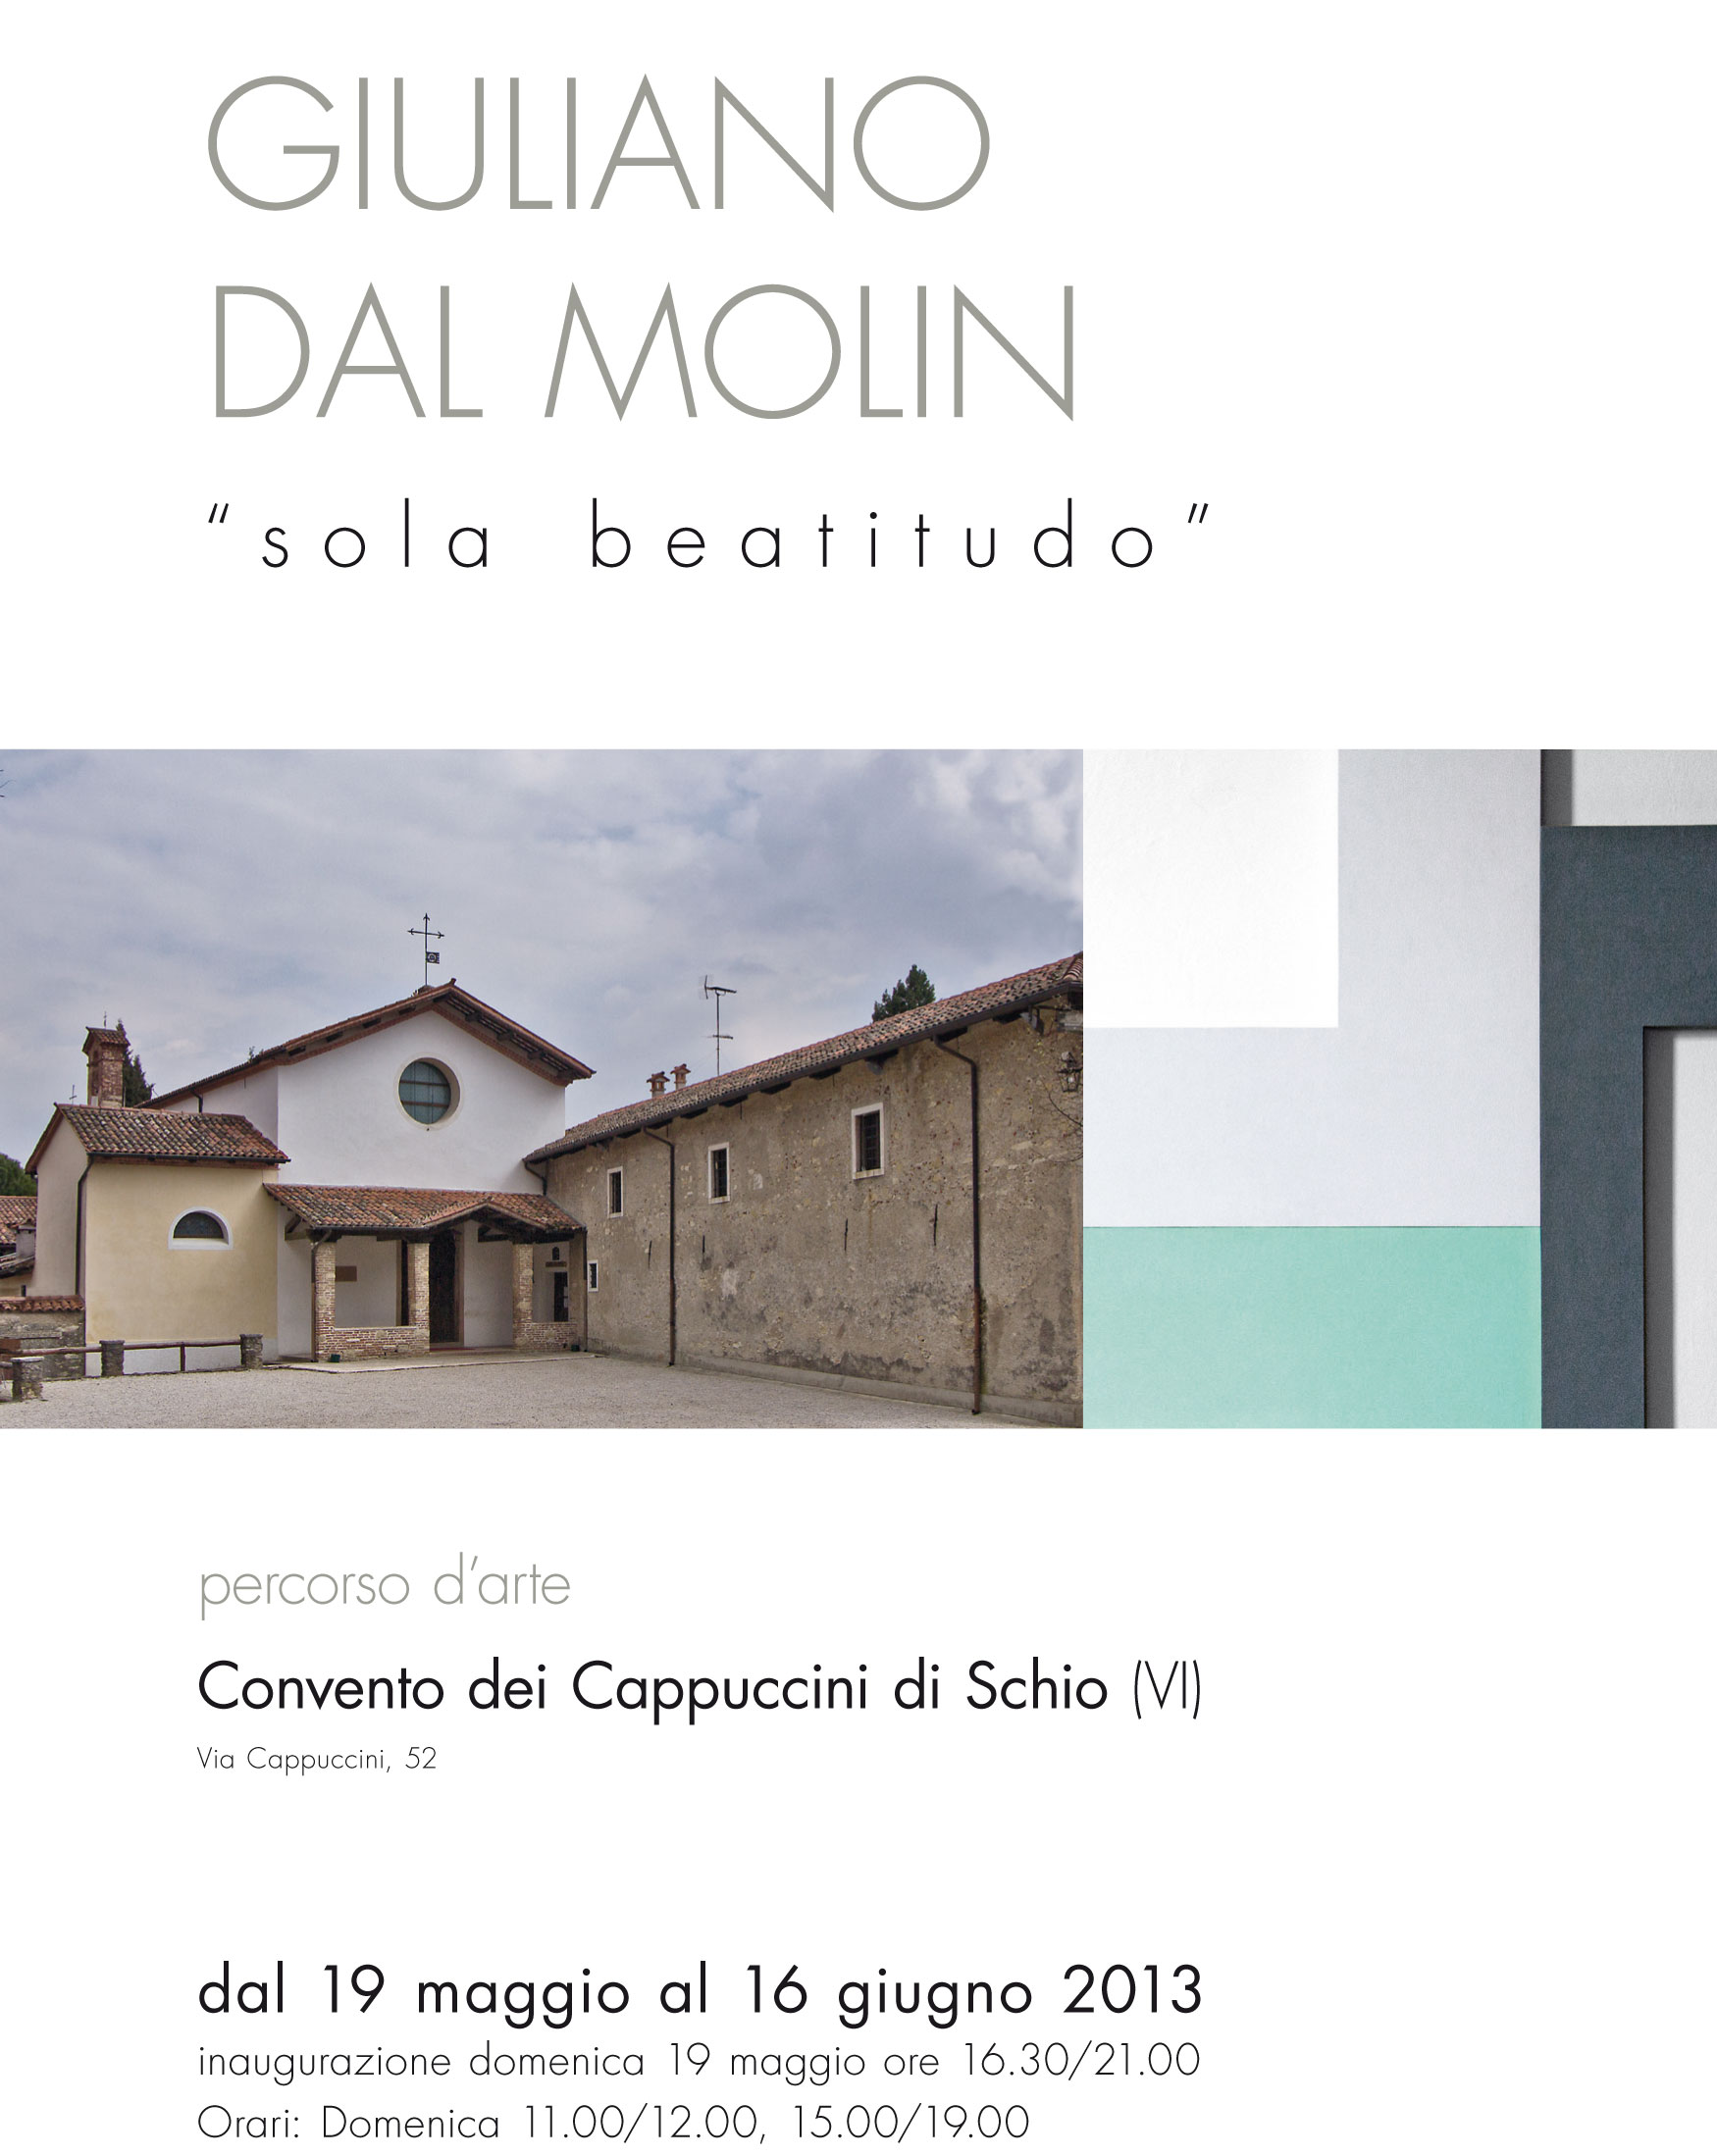 Giuliano-Dal-Molin-invito-Cappuccini_2013_web